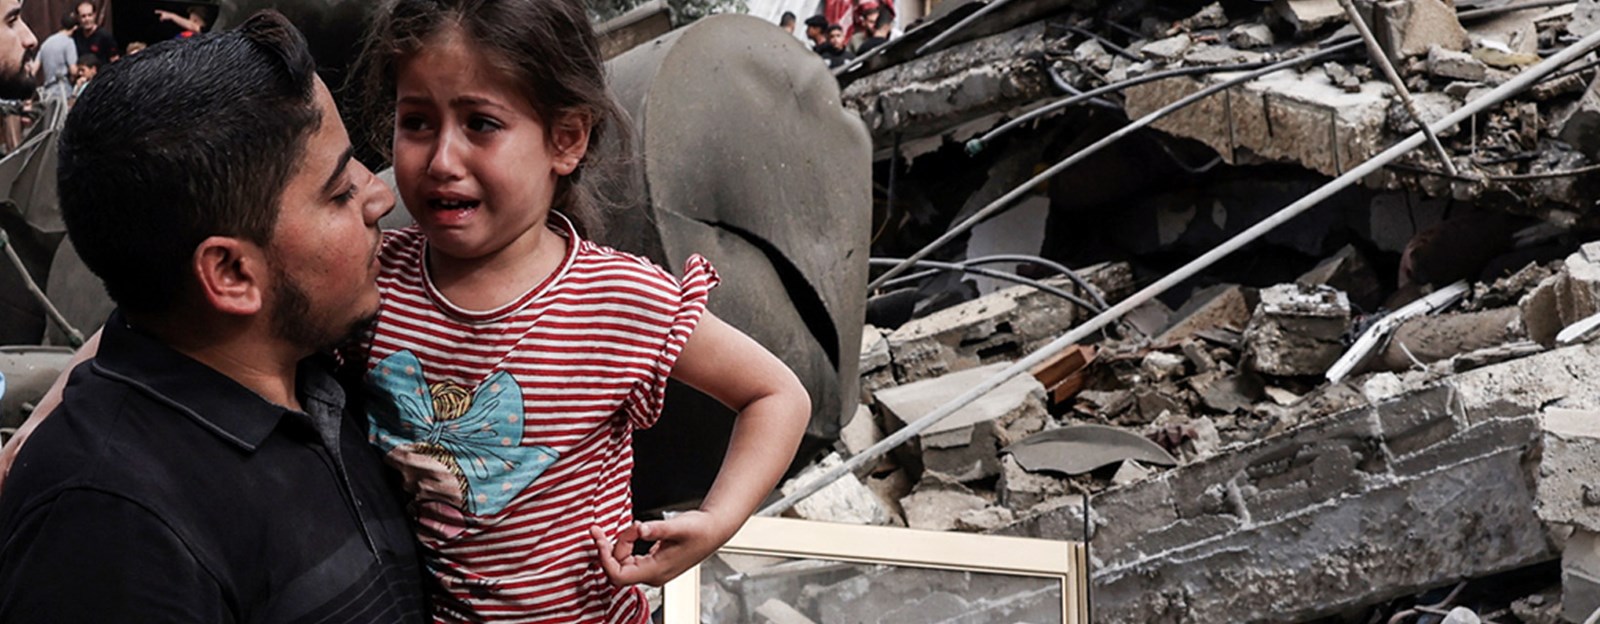 Barna i Gaza lider. De trenger din hjelp nå! 